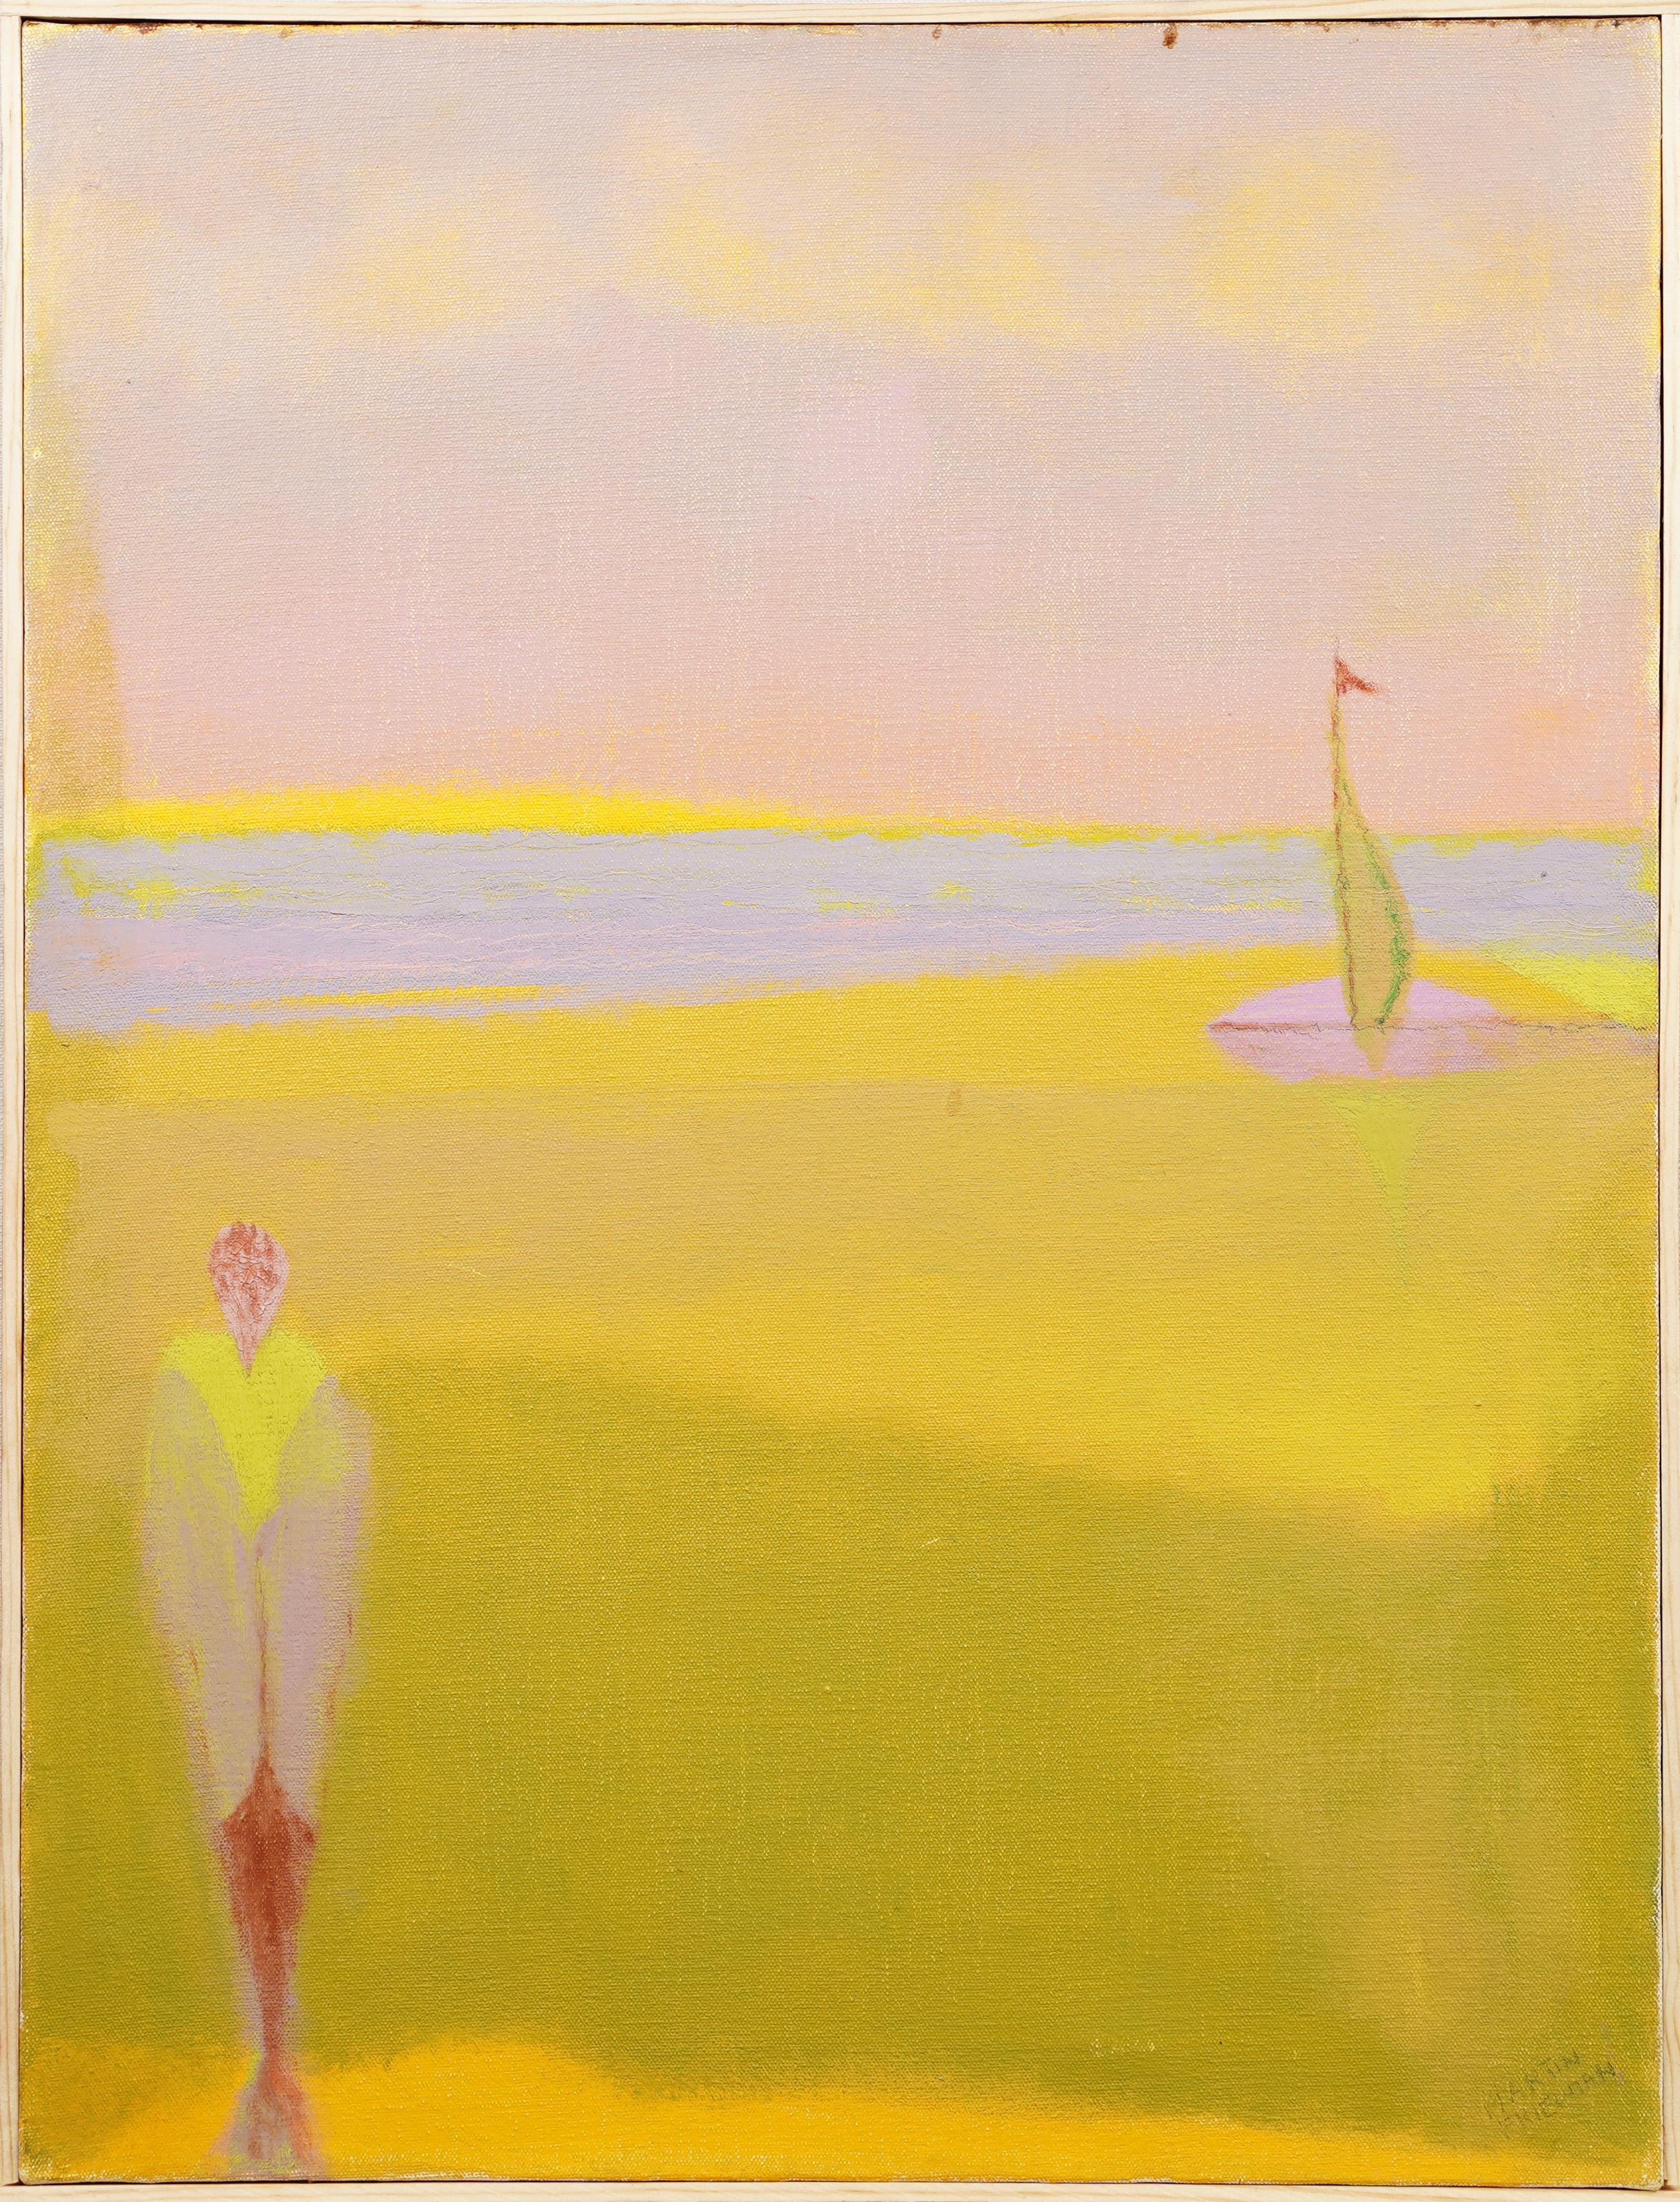 Abstract Painting Martin Friedman - Peinture à l'huile de paysage fauviste, expressionniste abstraite et moderniste américaine encadrée